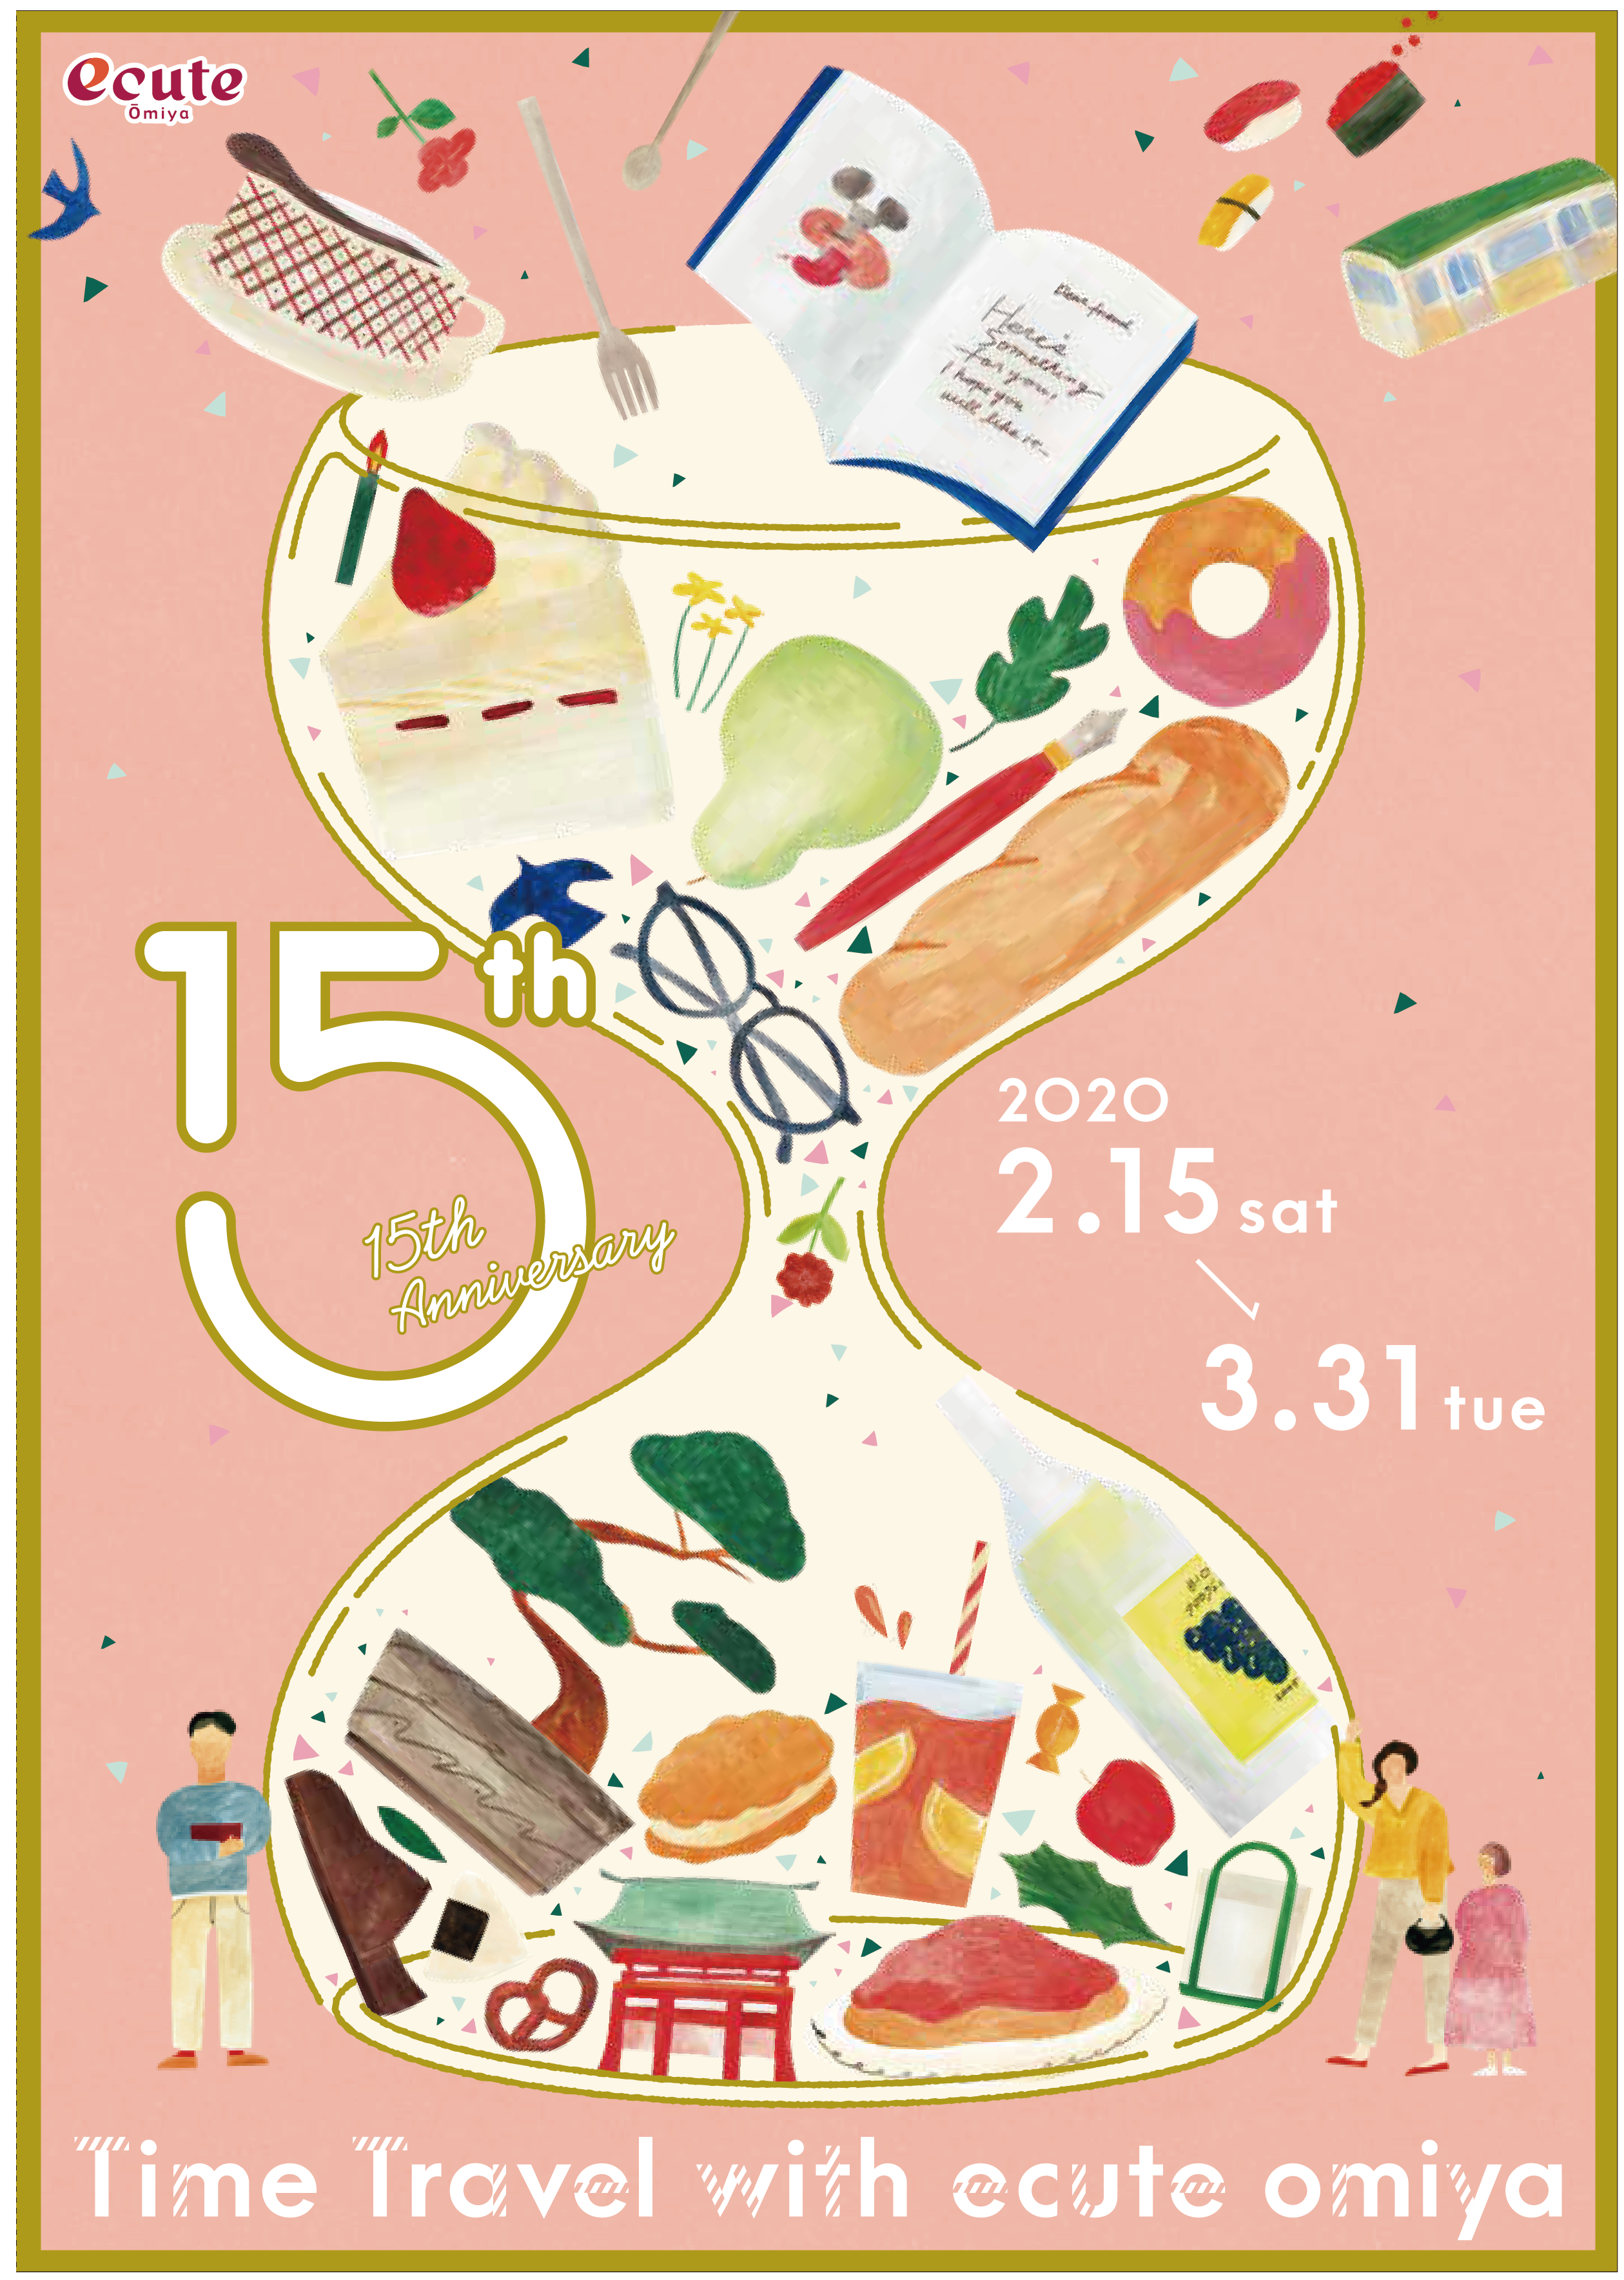 有機野菜の「ビオ・マルシェの宅配」、
オーガニックの「手前味噌」をつくる教室
「オーガニックみそづくり2020」を各地で開催！